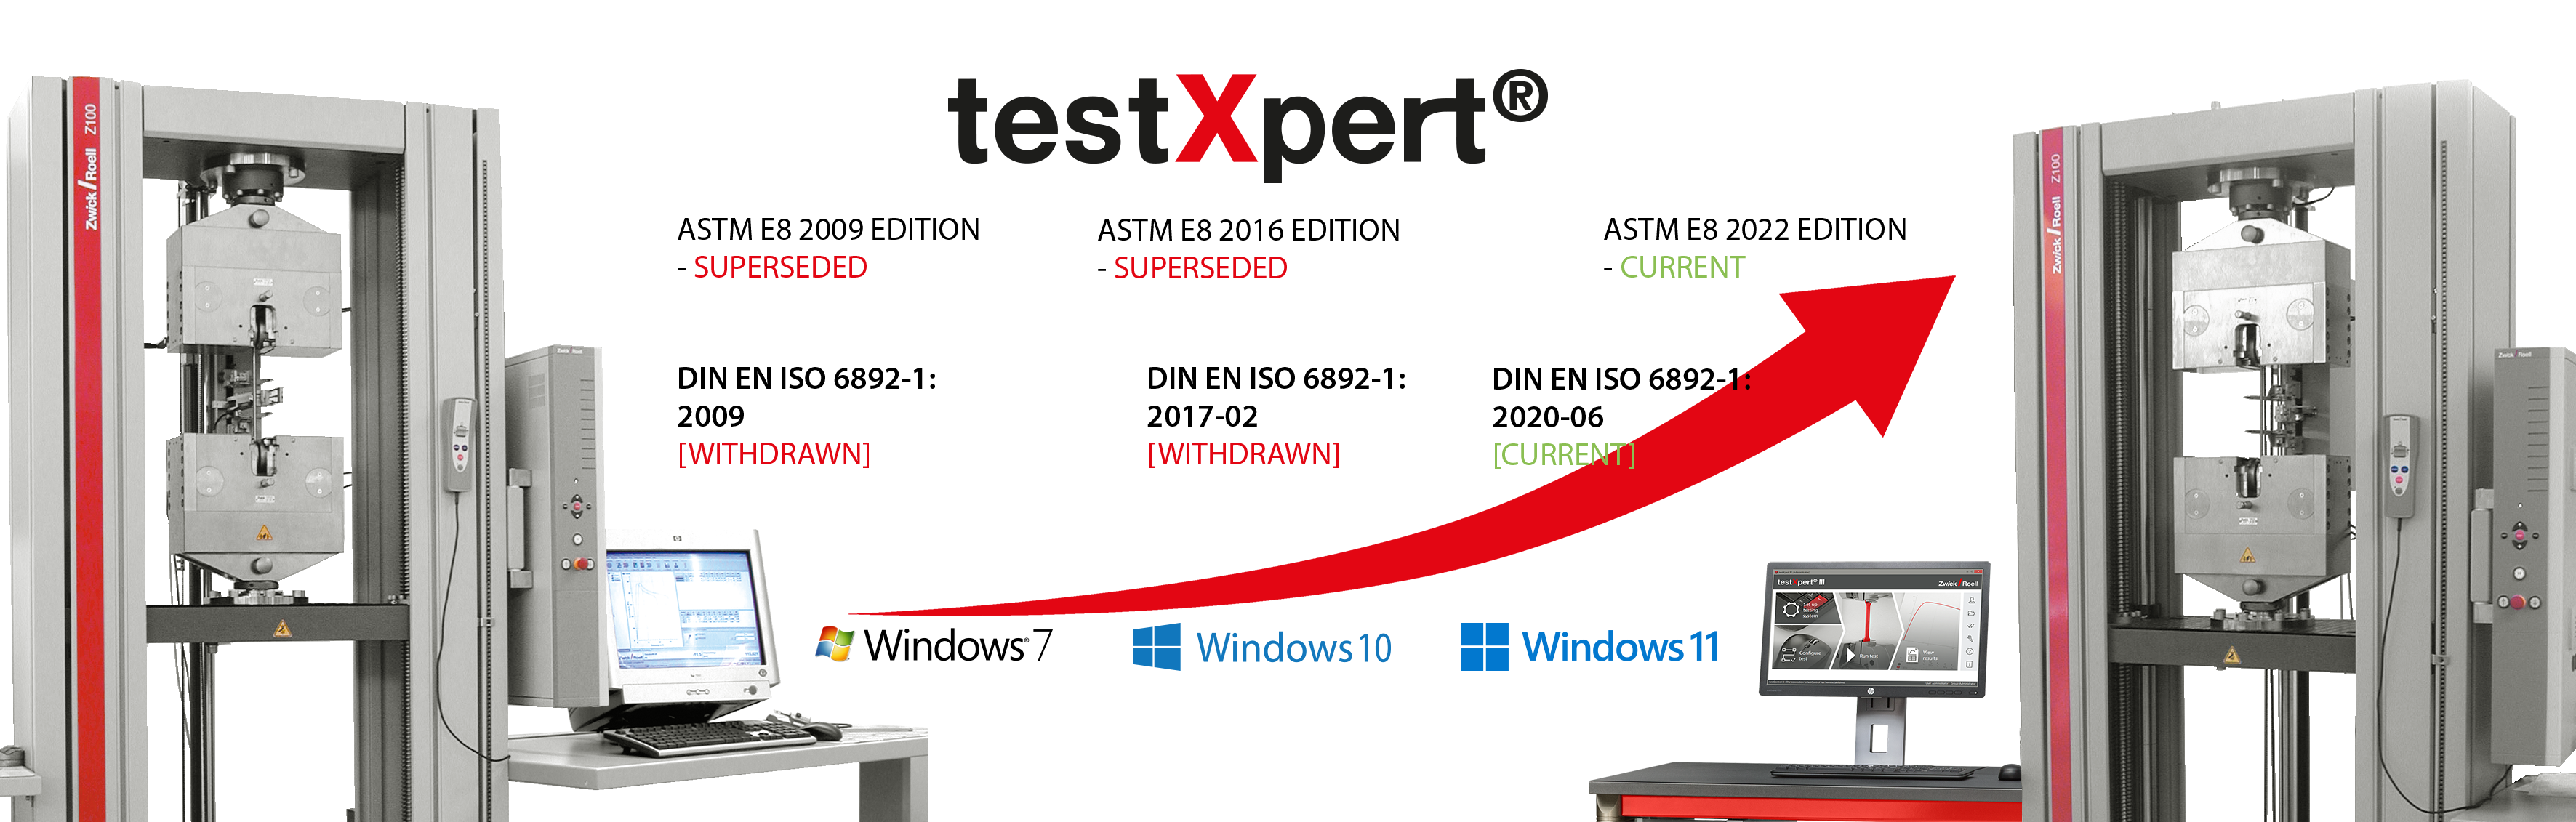 testXpert evoluciona con usted, independientemente de que cambie una norma o se lance un nuevo sistema operativo